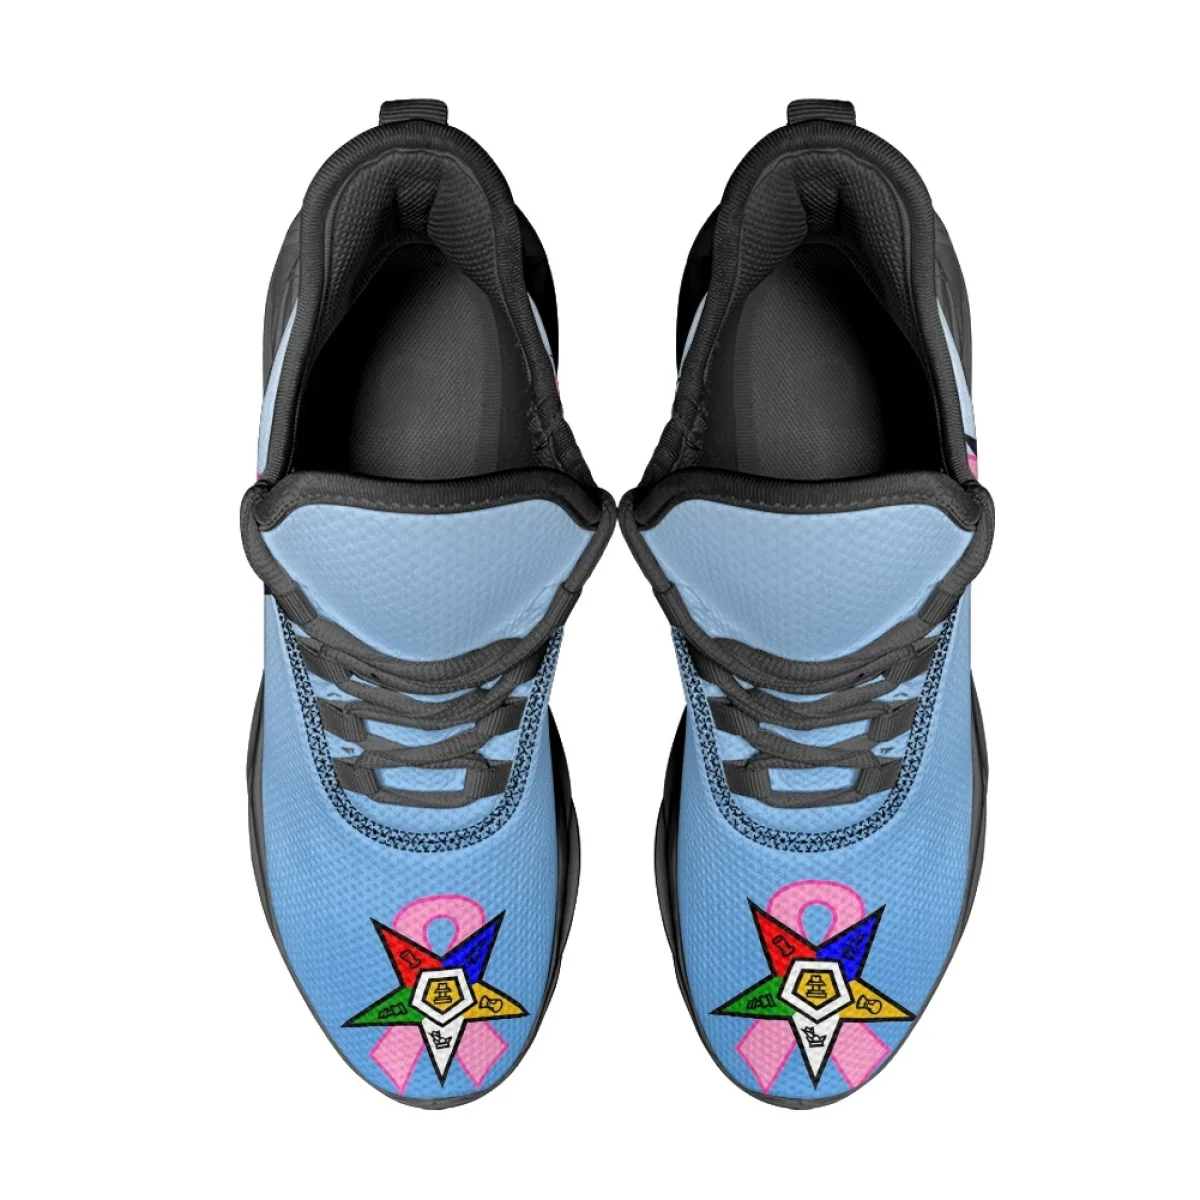 Sommer Sneakers für Frauen heiße griechische Schwestern schaft Ordnung des Eastern Star Print Outdoor-Sports Schnür laufschuhe vulkan isierten Schuh